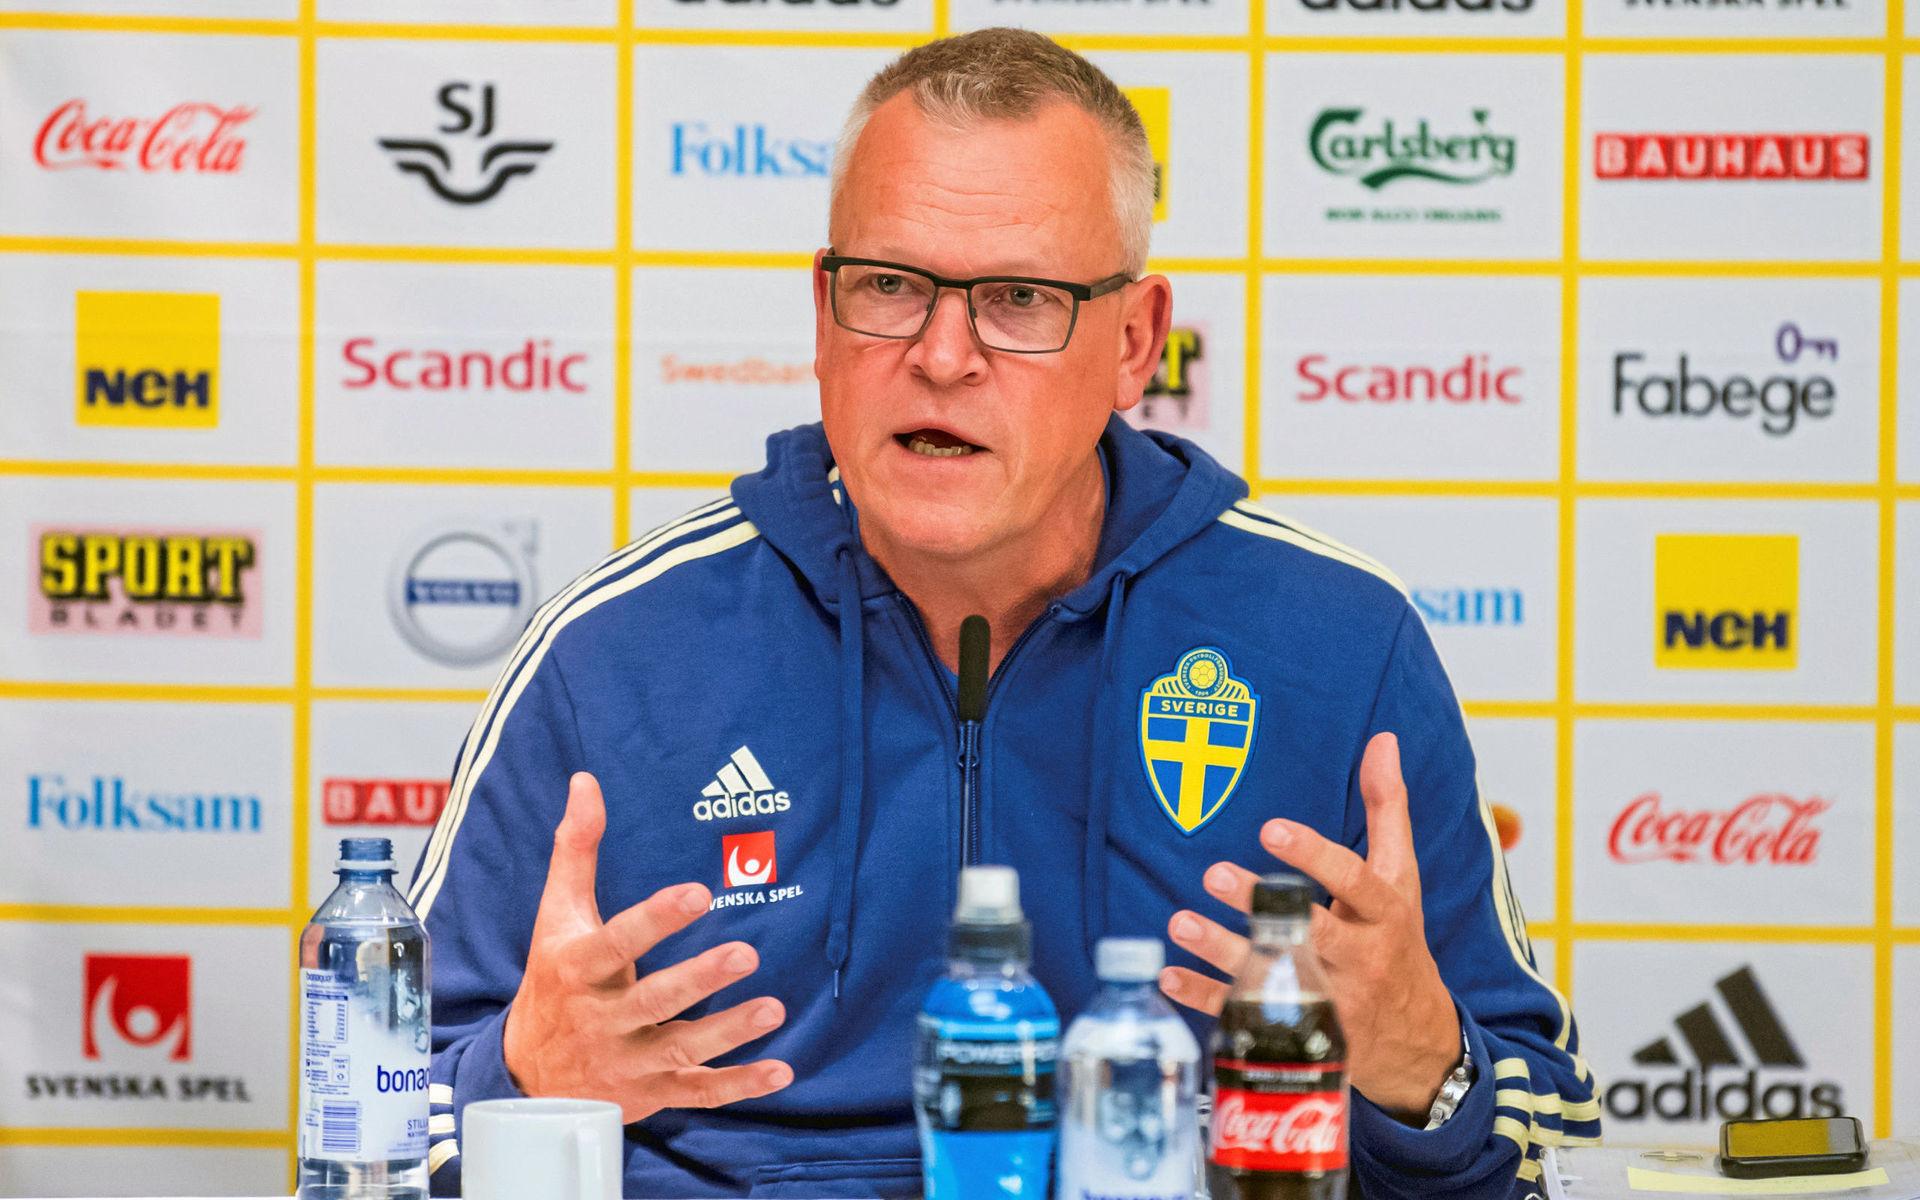 Sedan 2016 är Janne Andersson förbundskapten för Sveriges herrlandslag i fotboll. ”Det är egentligen inget jobb, utan en livsstil. Jag har det alltid med mig och det har gått hyfsat bra för oss under mina 3,5 år”, konstaterar Årets hallänning.